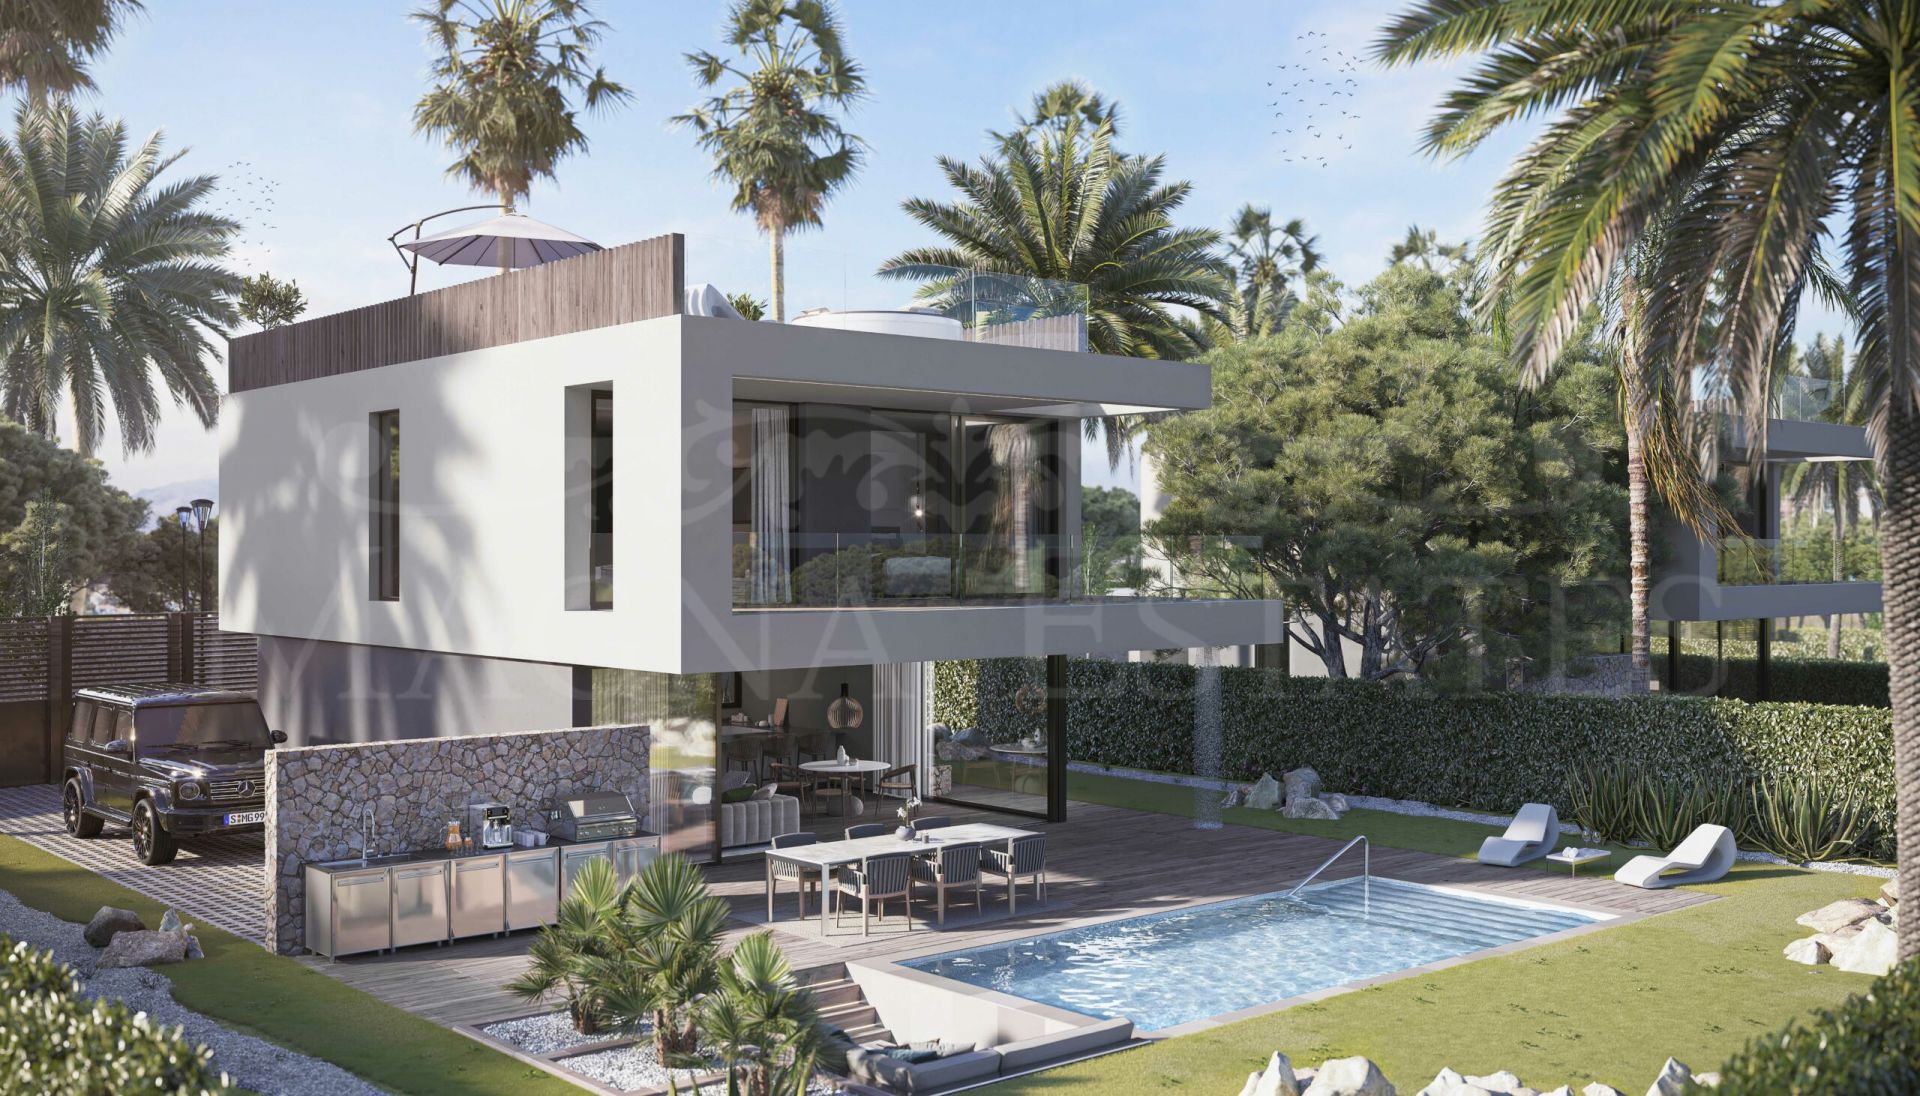 Brand new detached villa in El Campanario, Estepona - Marbella.